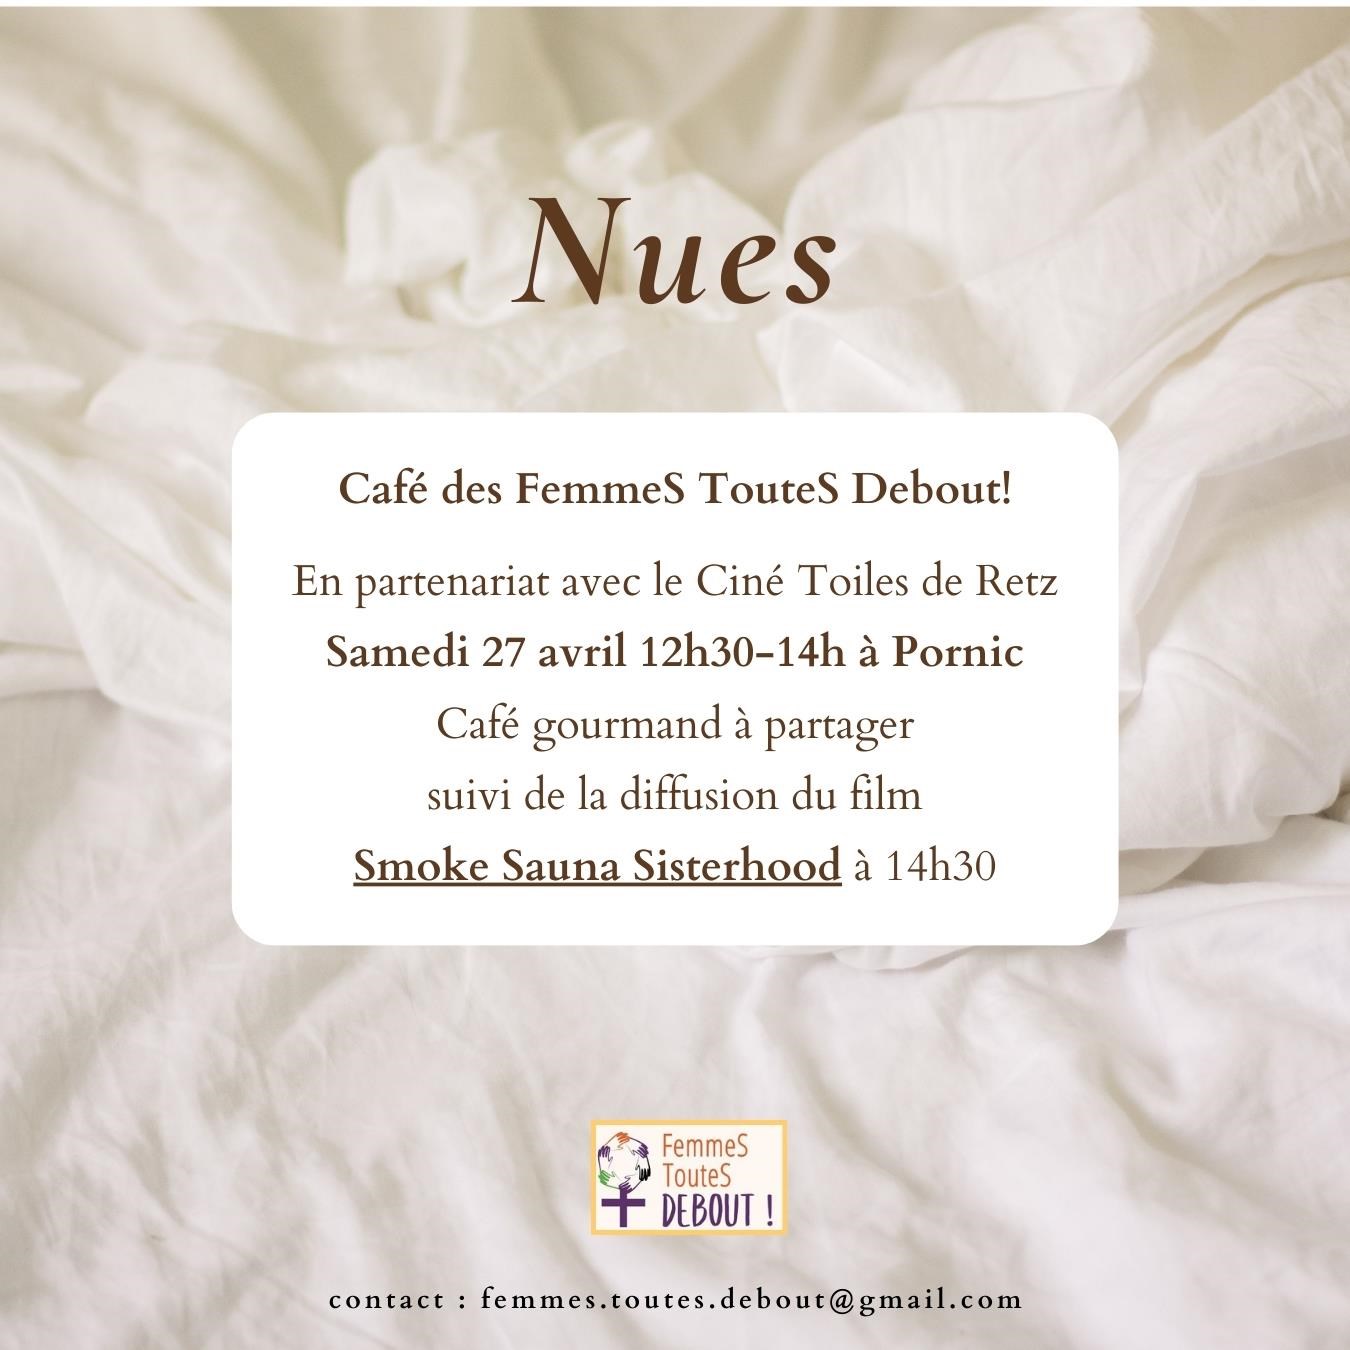 Café des FemmeS TouteS Debout! © FemmeS TouteS Debout!